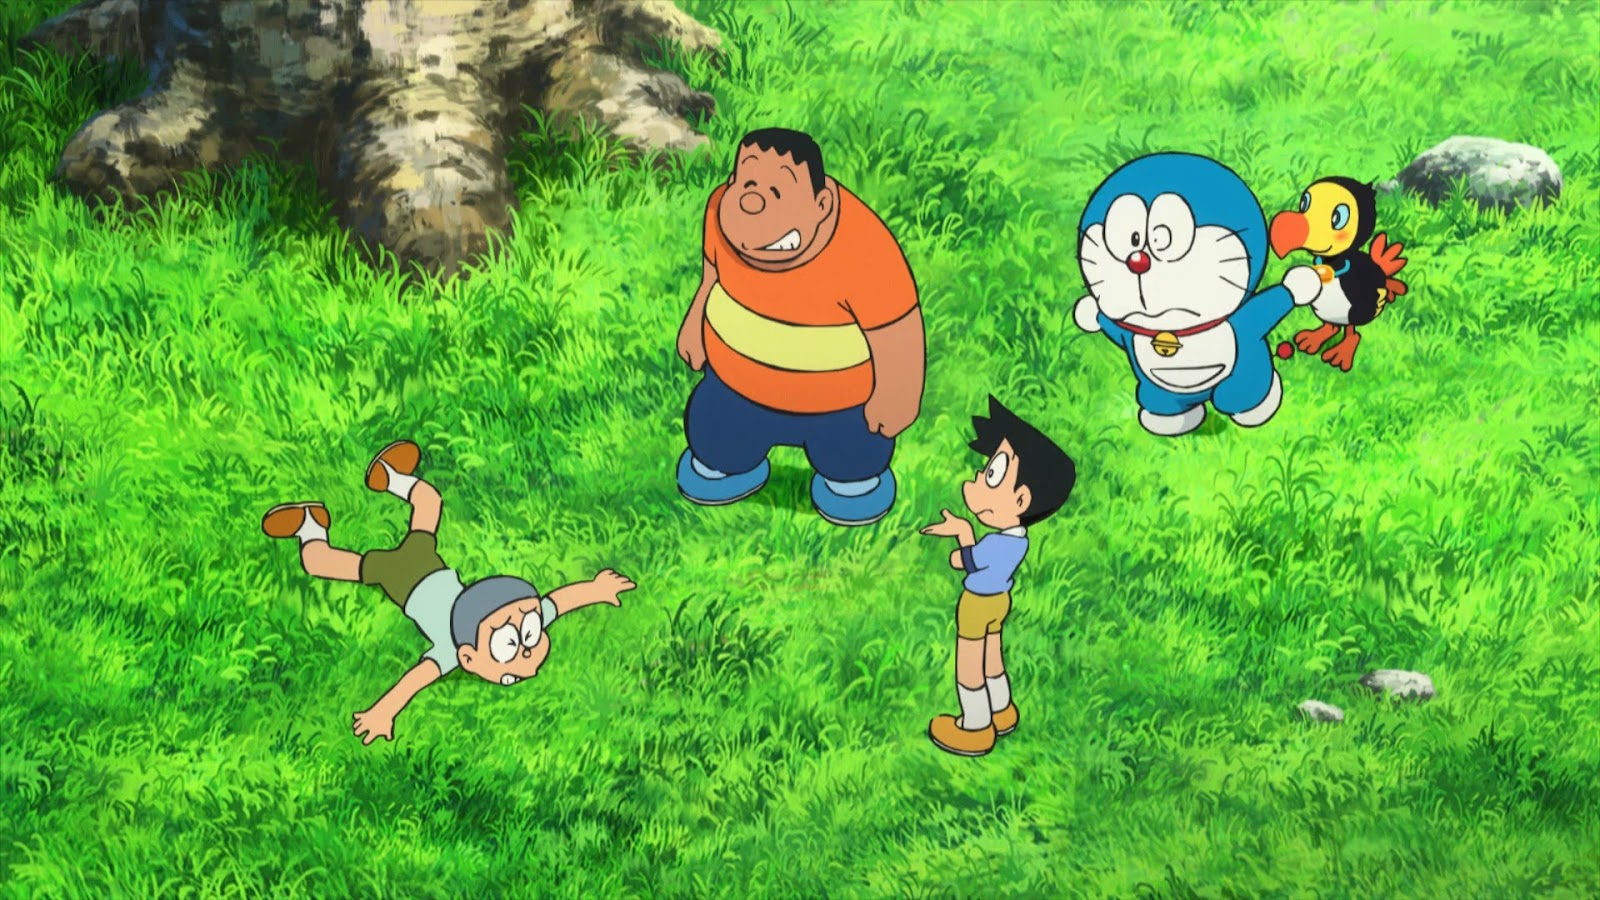 Doraemon: Nobita y la isla de los milagros (2012) 1080p WEB-DL Latino